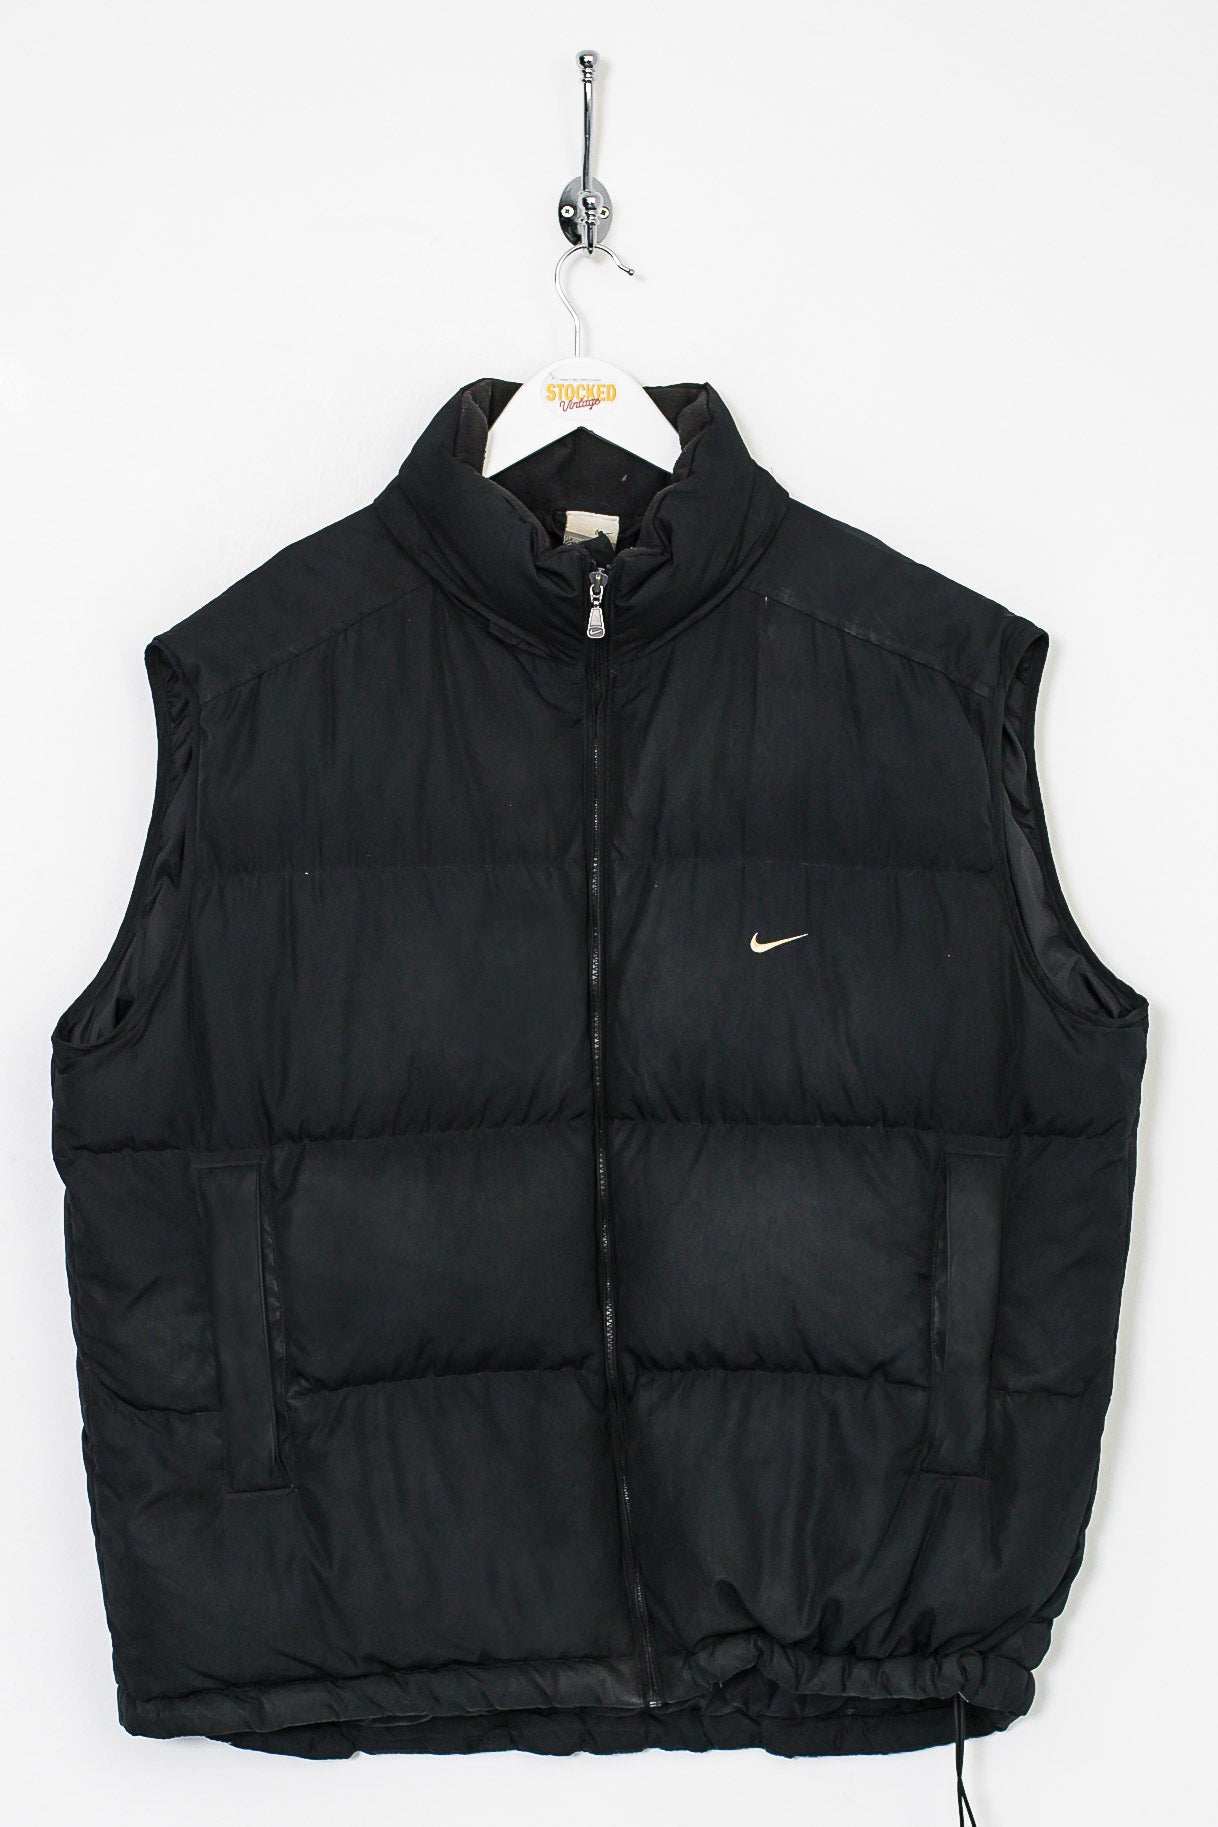 Sleeveless jacket Nike Shield Tiger Woods